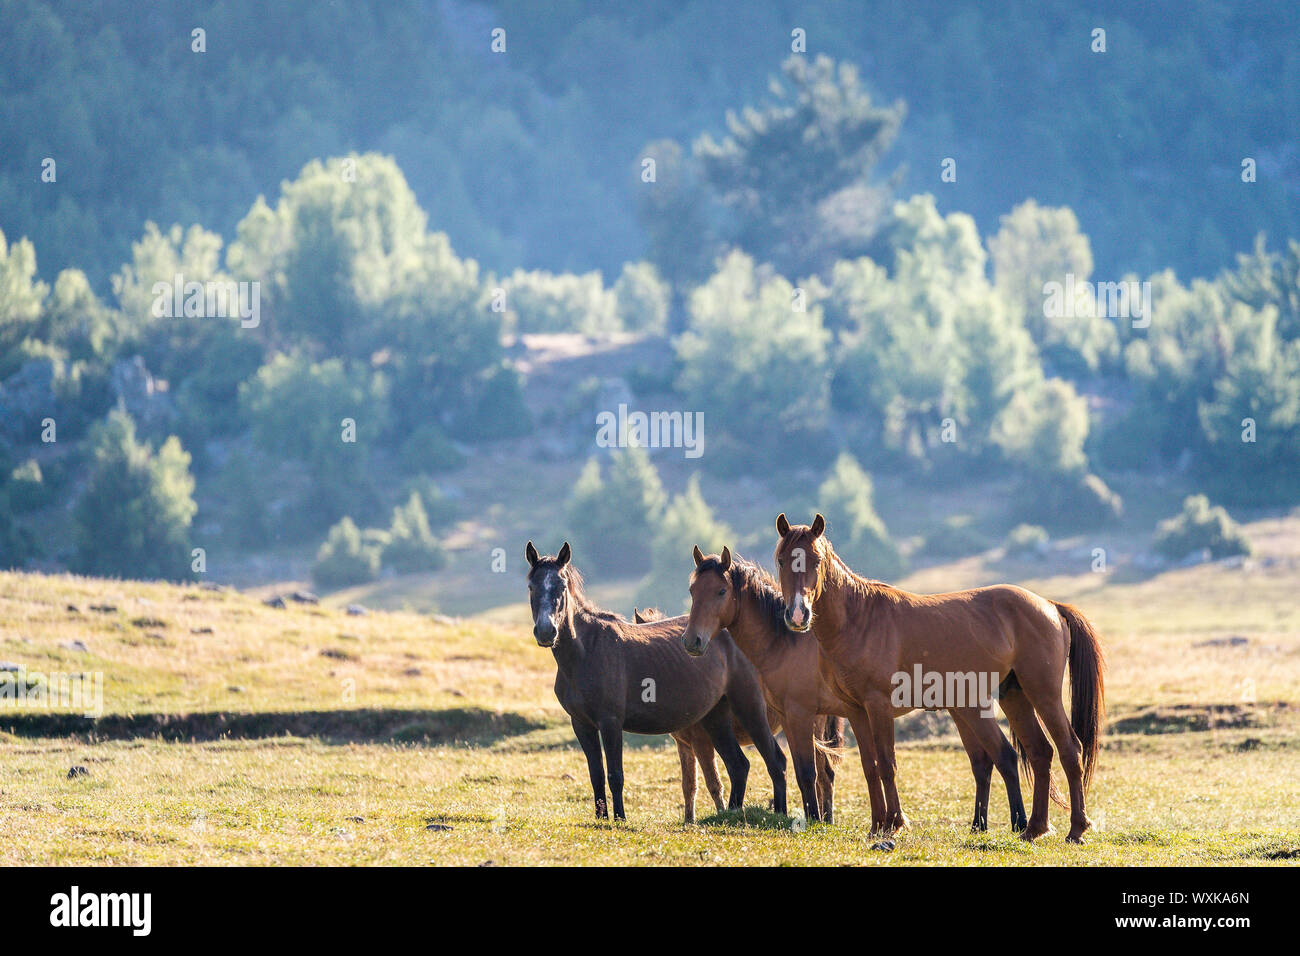 Wild horse, chevaux sauvages. Trois mares debout dans paysage. La Turquie Banque D'Images